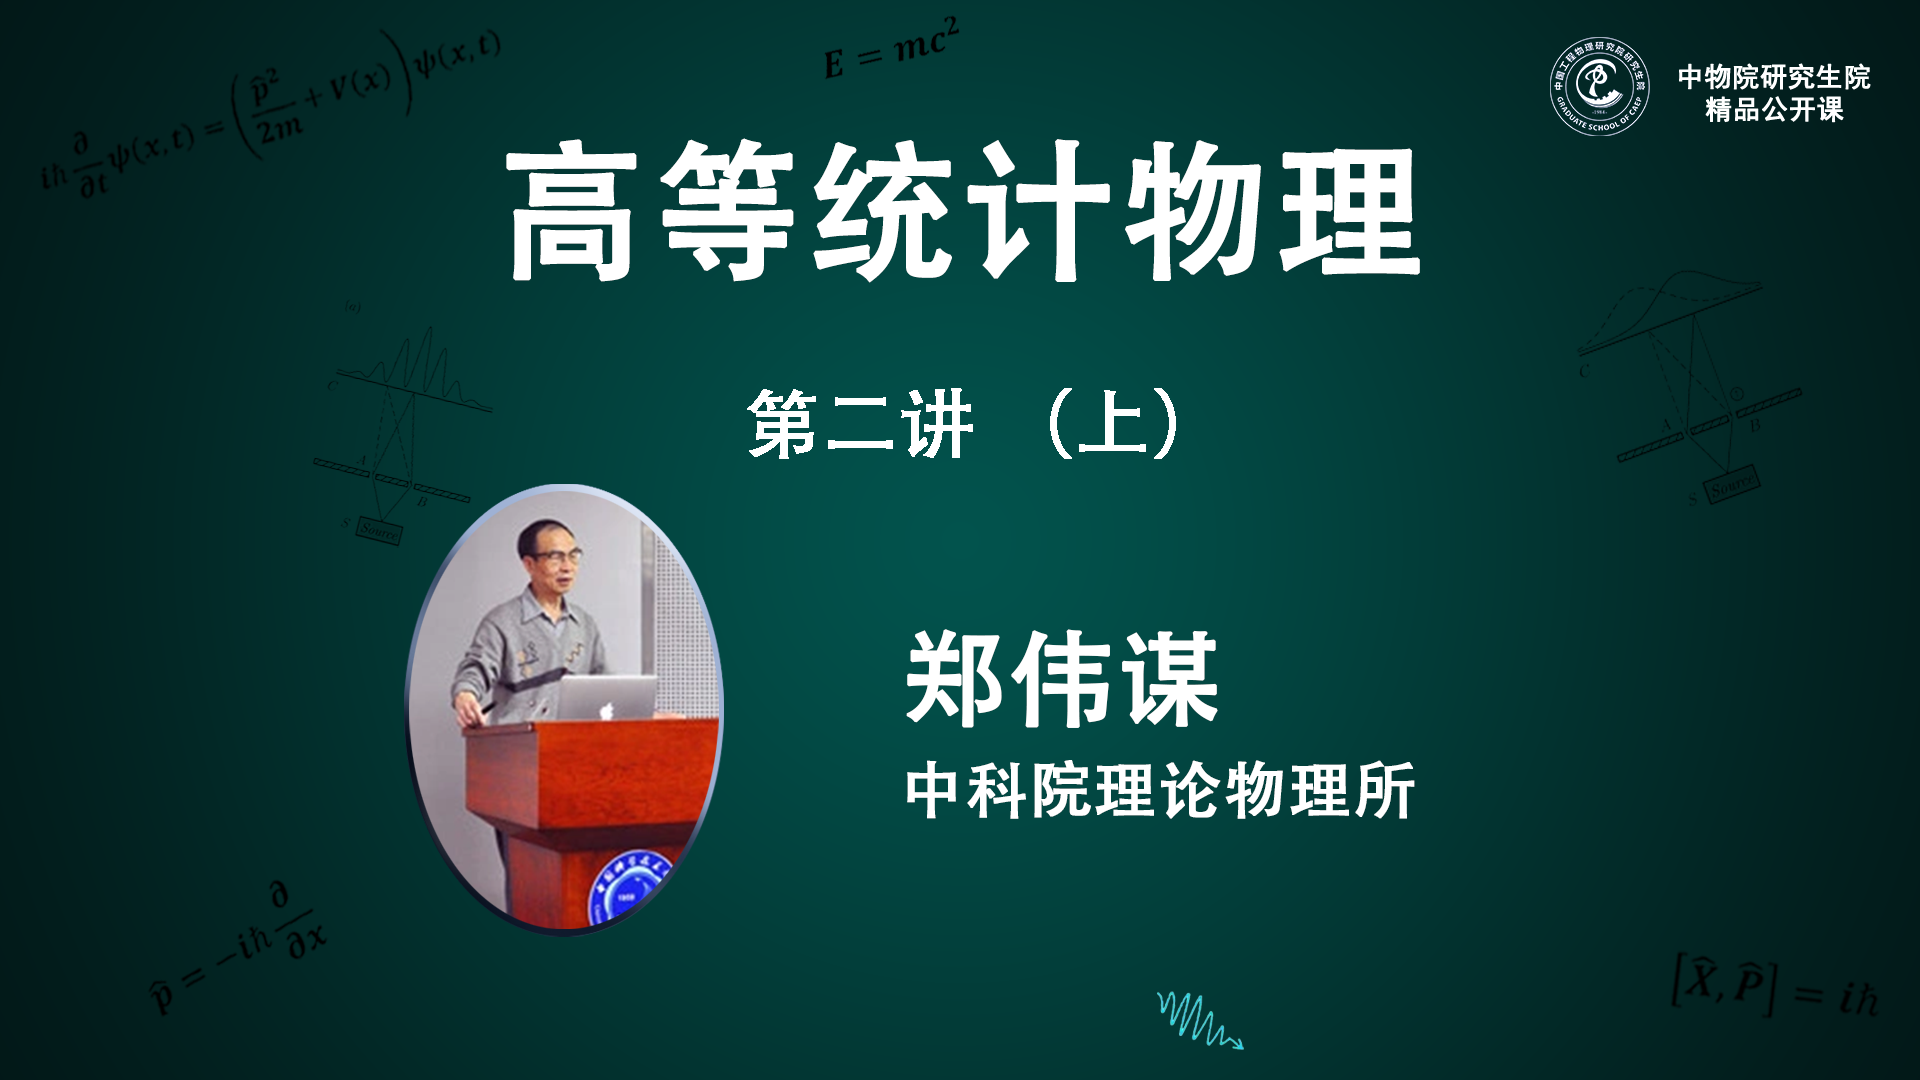 郑伟谋(中国科学院- 理论物理所)：2022《高等统计物理》第二讲（上）